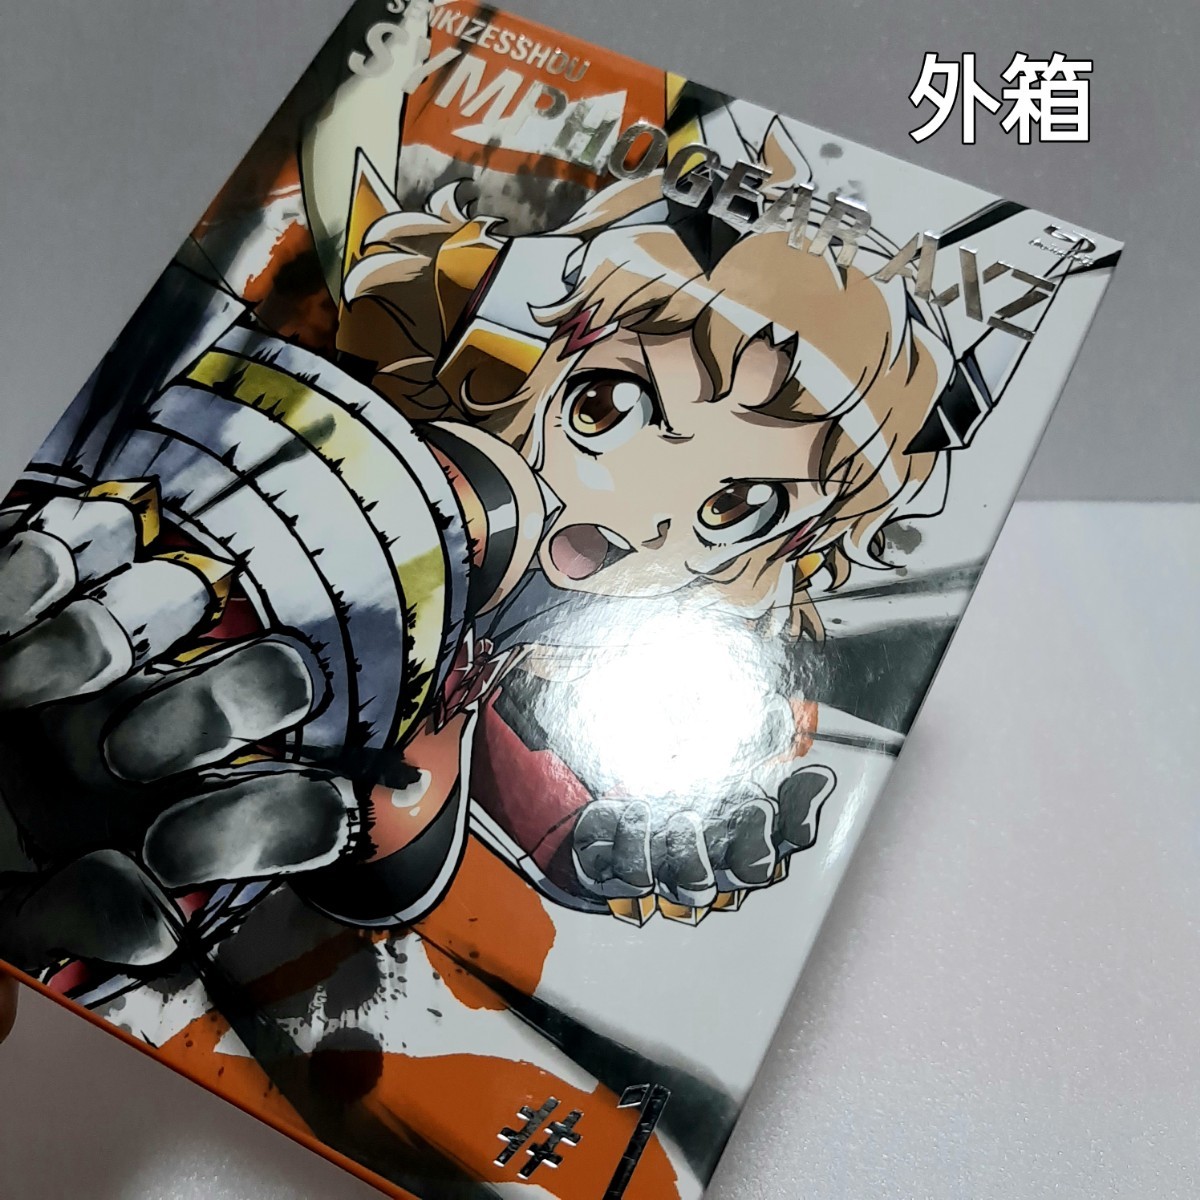 戦姫絶唱シンフォギアAXZ #1 Blu-ray+ボーナスCD 2枚組の画像5